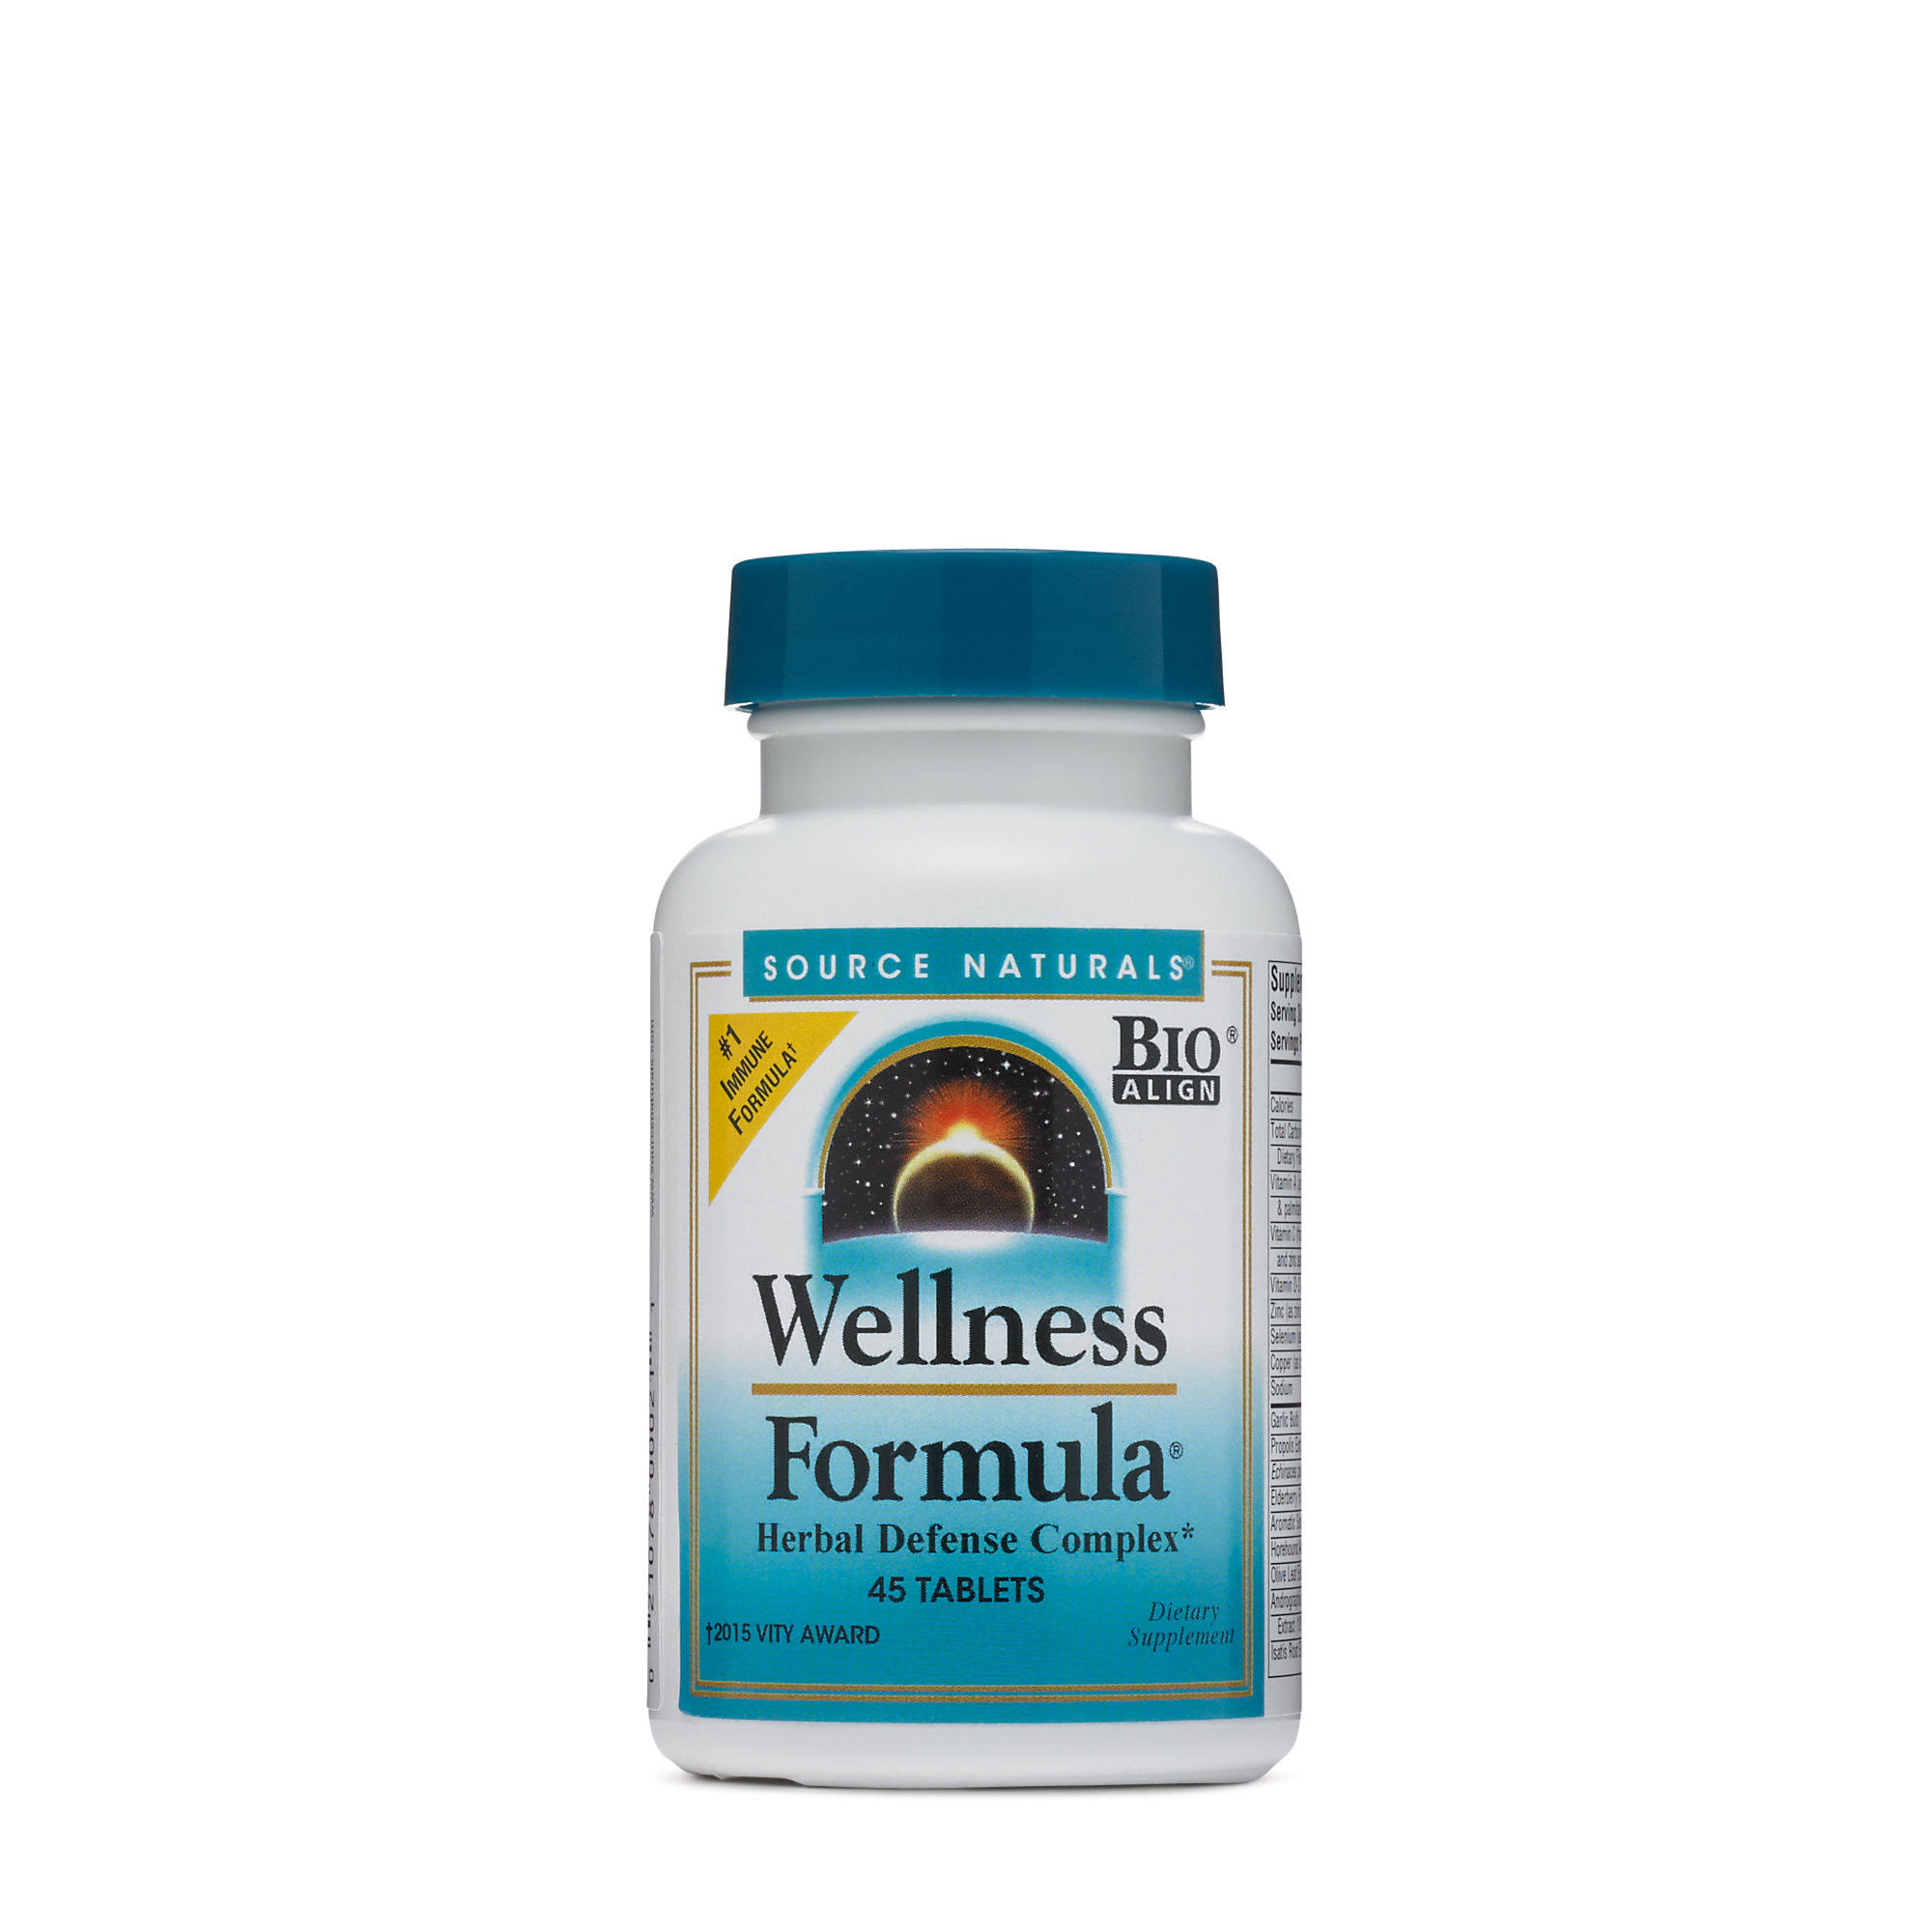 Source Naturals Wellness Formula, Herbal Defense Complex - 45 tablets